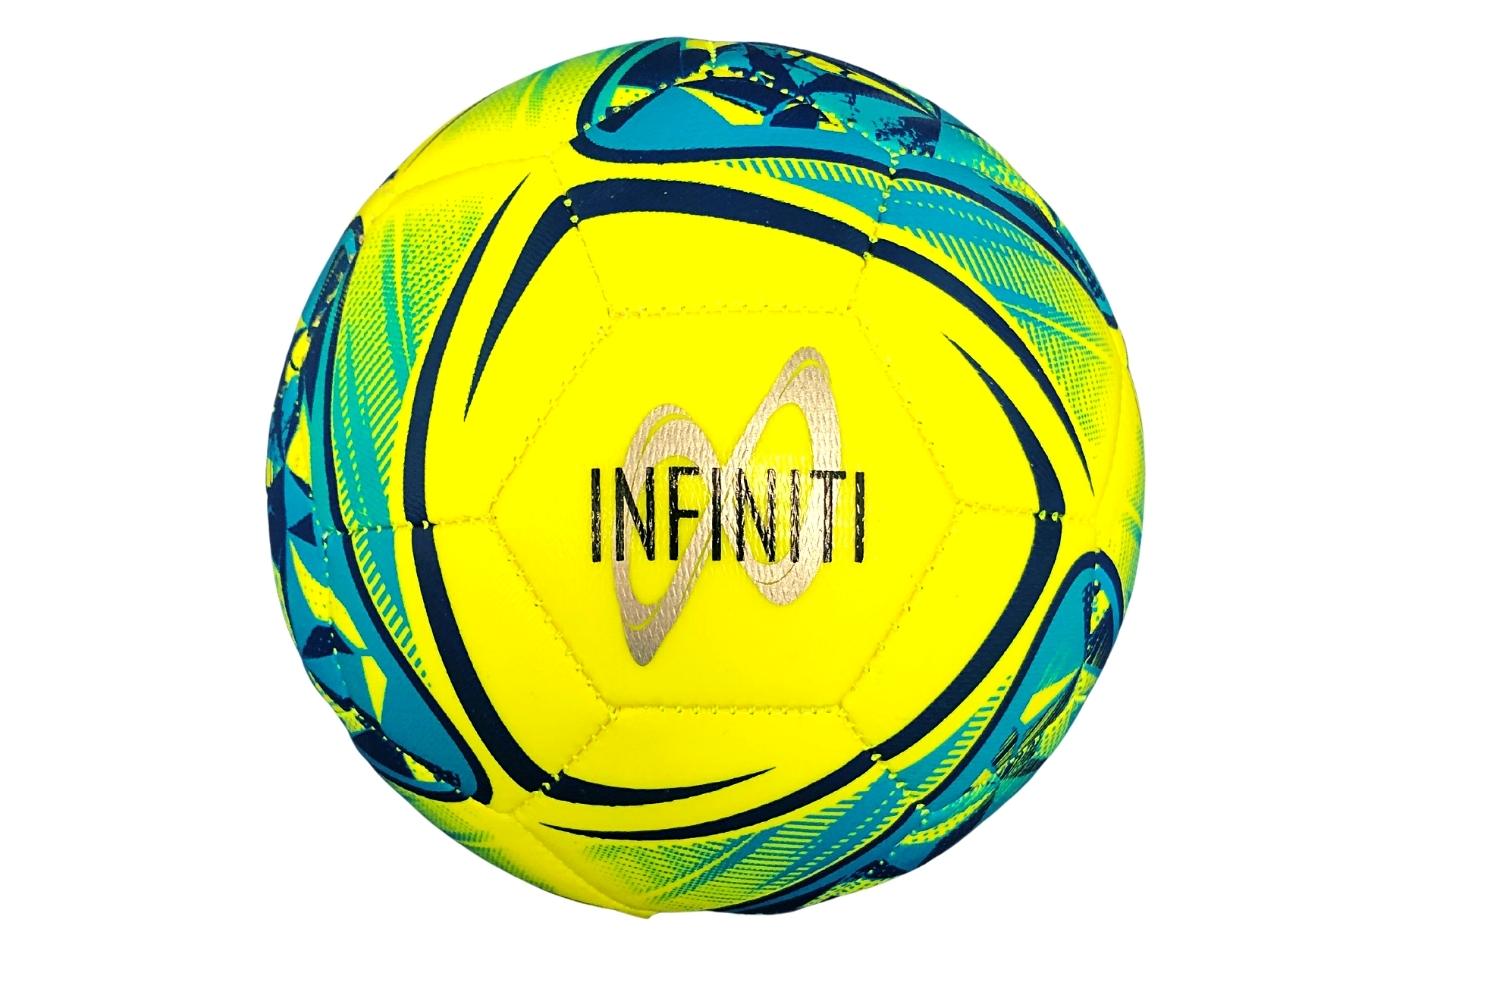 Samba Infiniti Training Ball Size 3 Football Qty 10 White/Black/Silver 